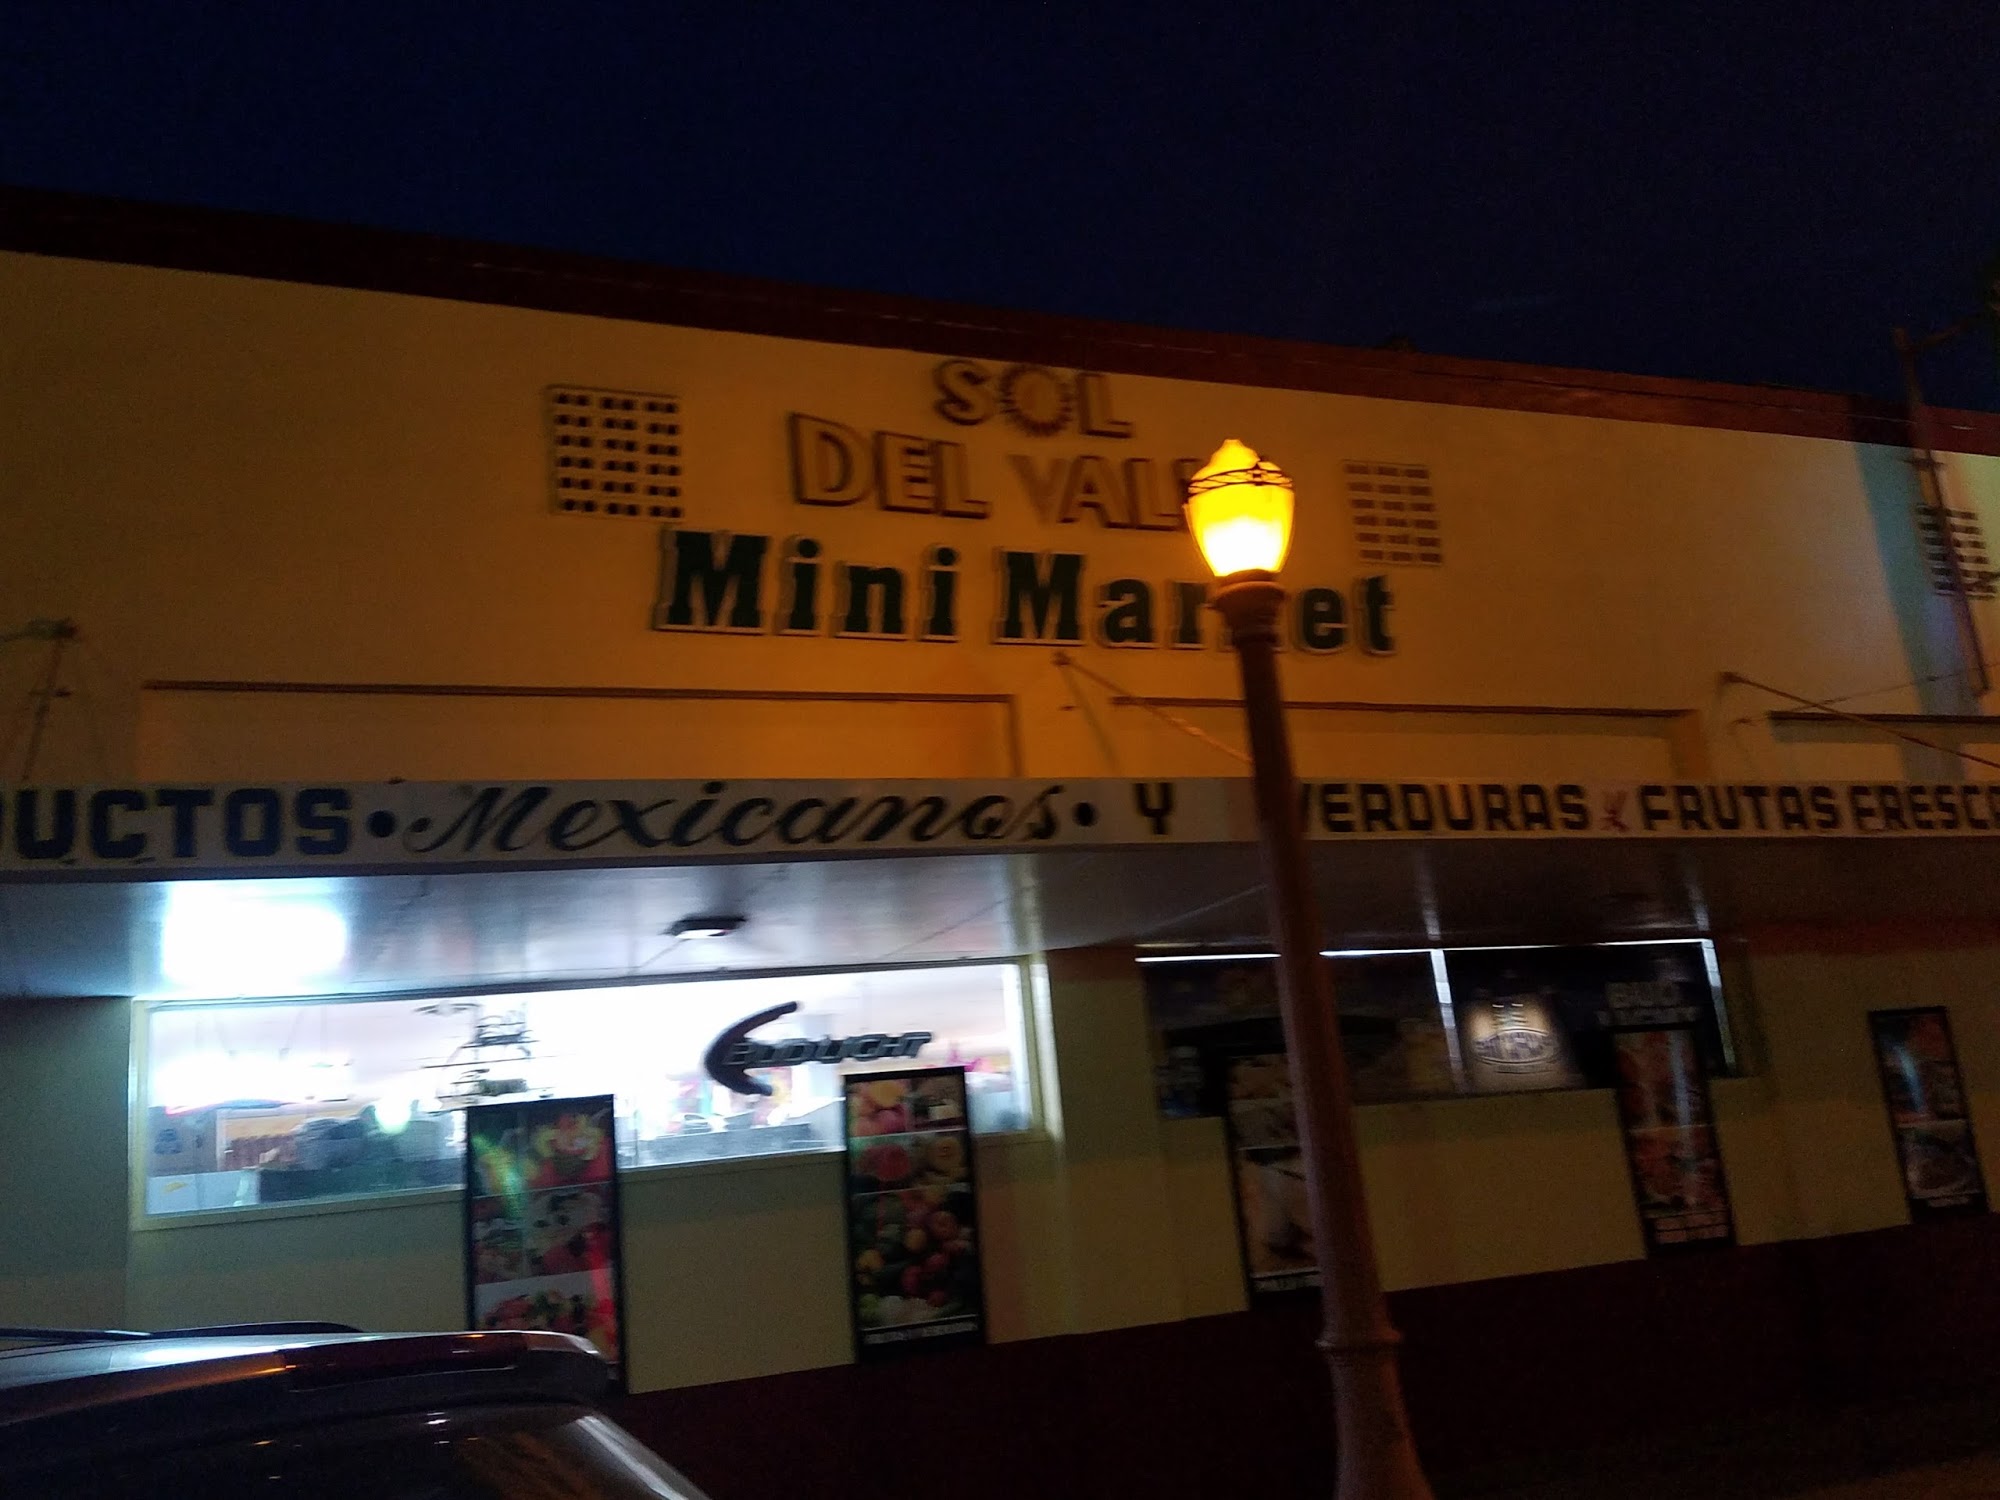 Sol Del Valle Mini Market